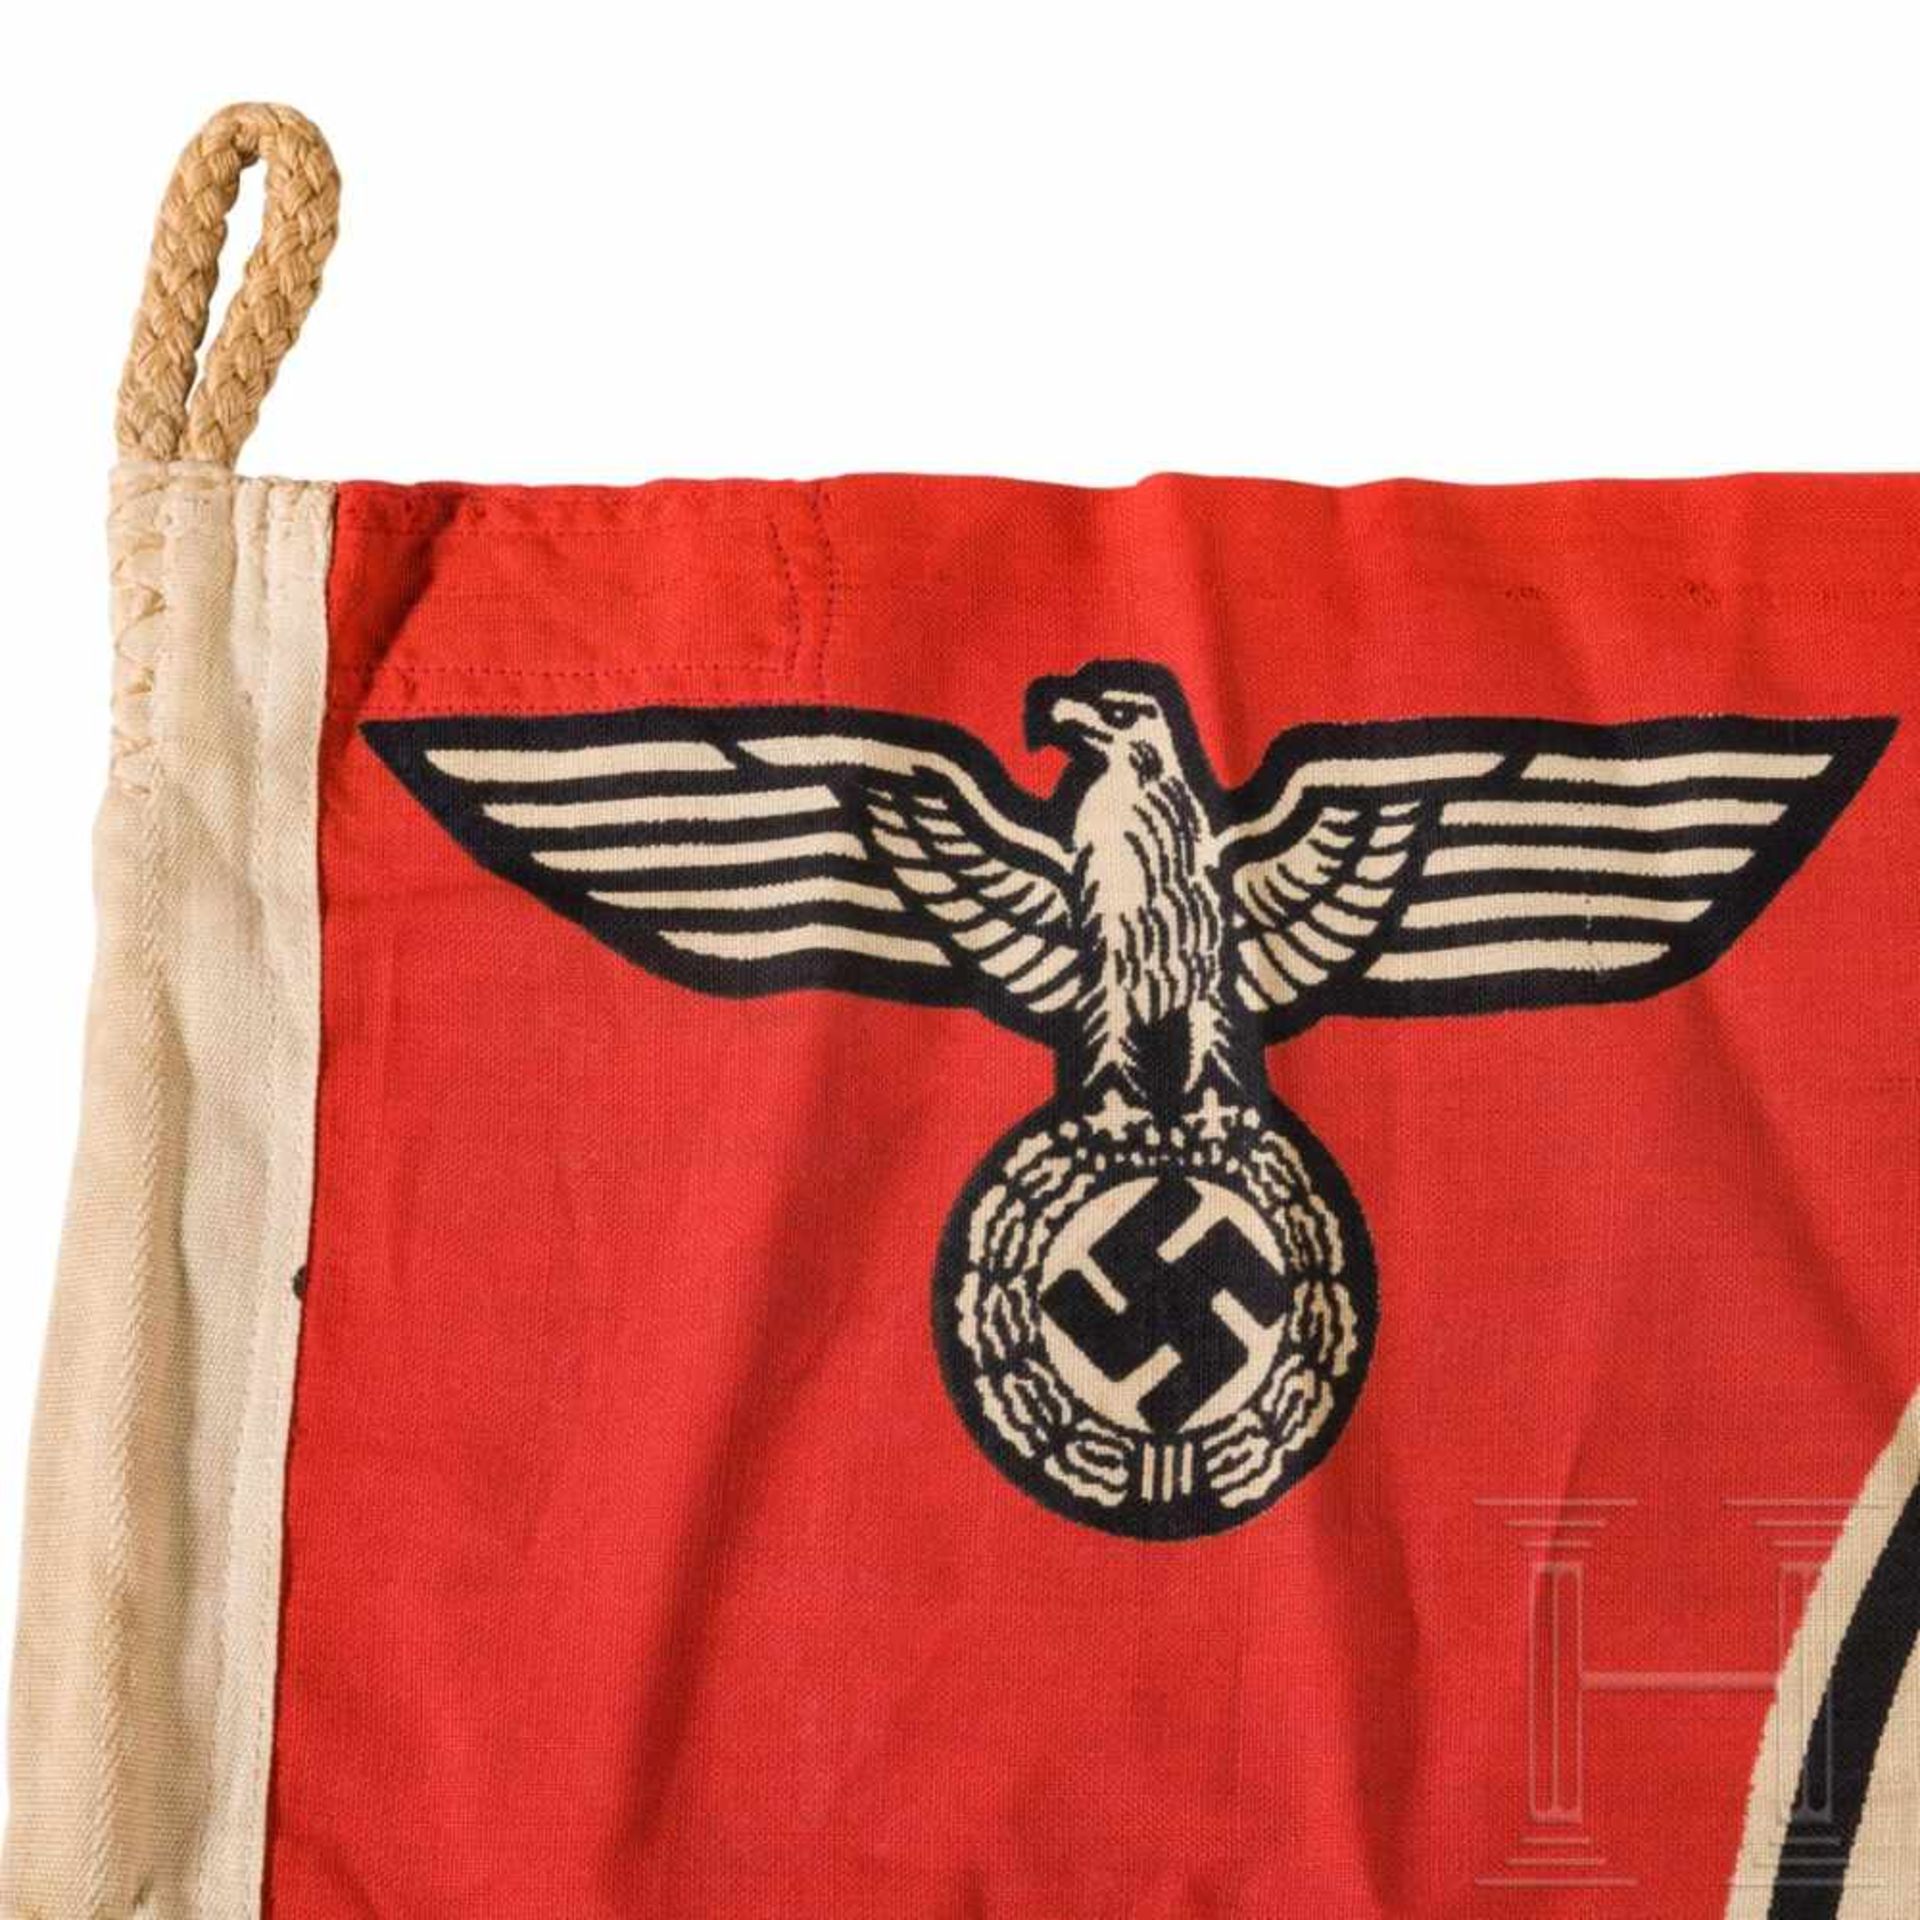 Reichsdienstflagge mit Herstellerstempelung und Abnahmestempel der Kriegsmarine - Bild 3 aus 6